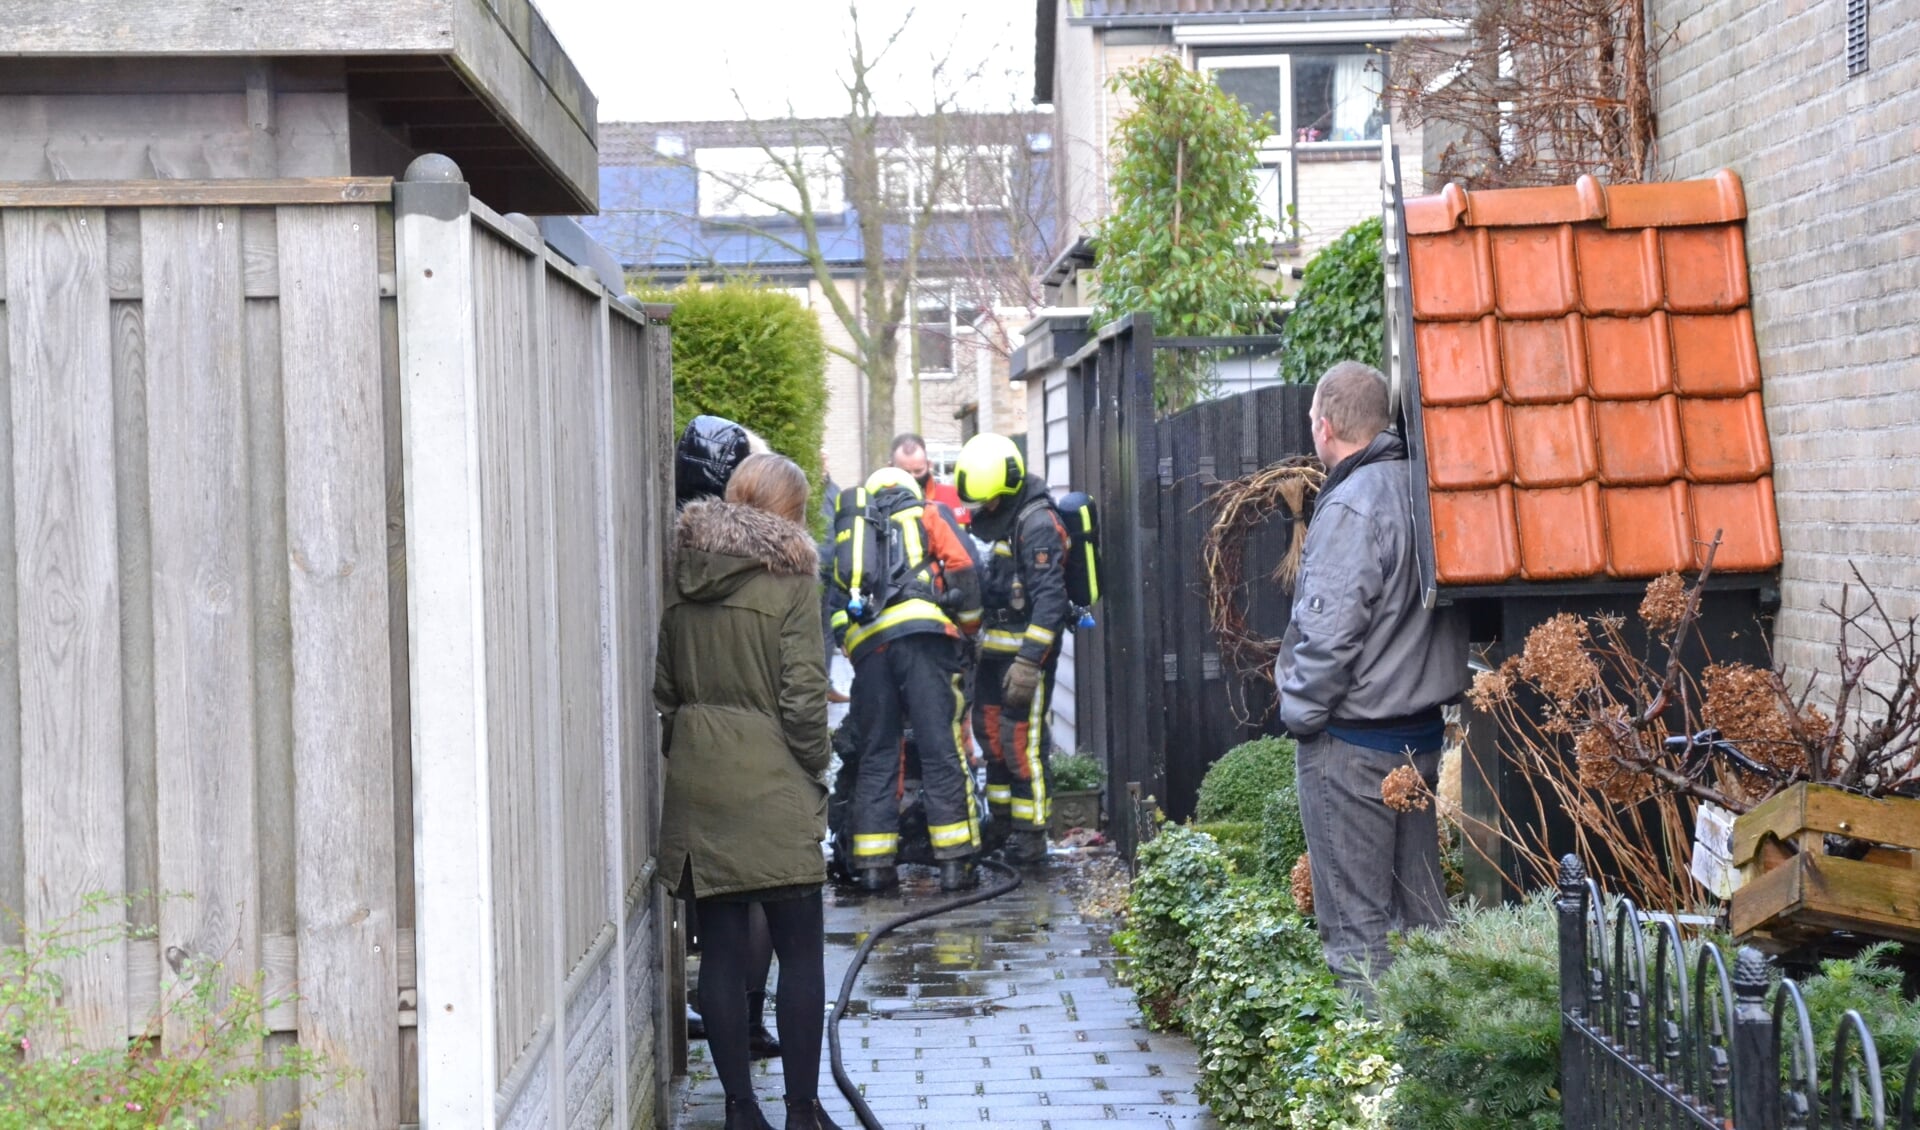 Op nieuwjaarsdag rukte de brandweer uit voor brand in een kliko aan de Woubrechterf.